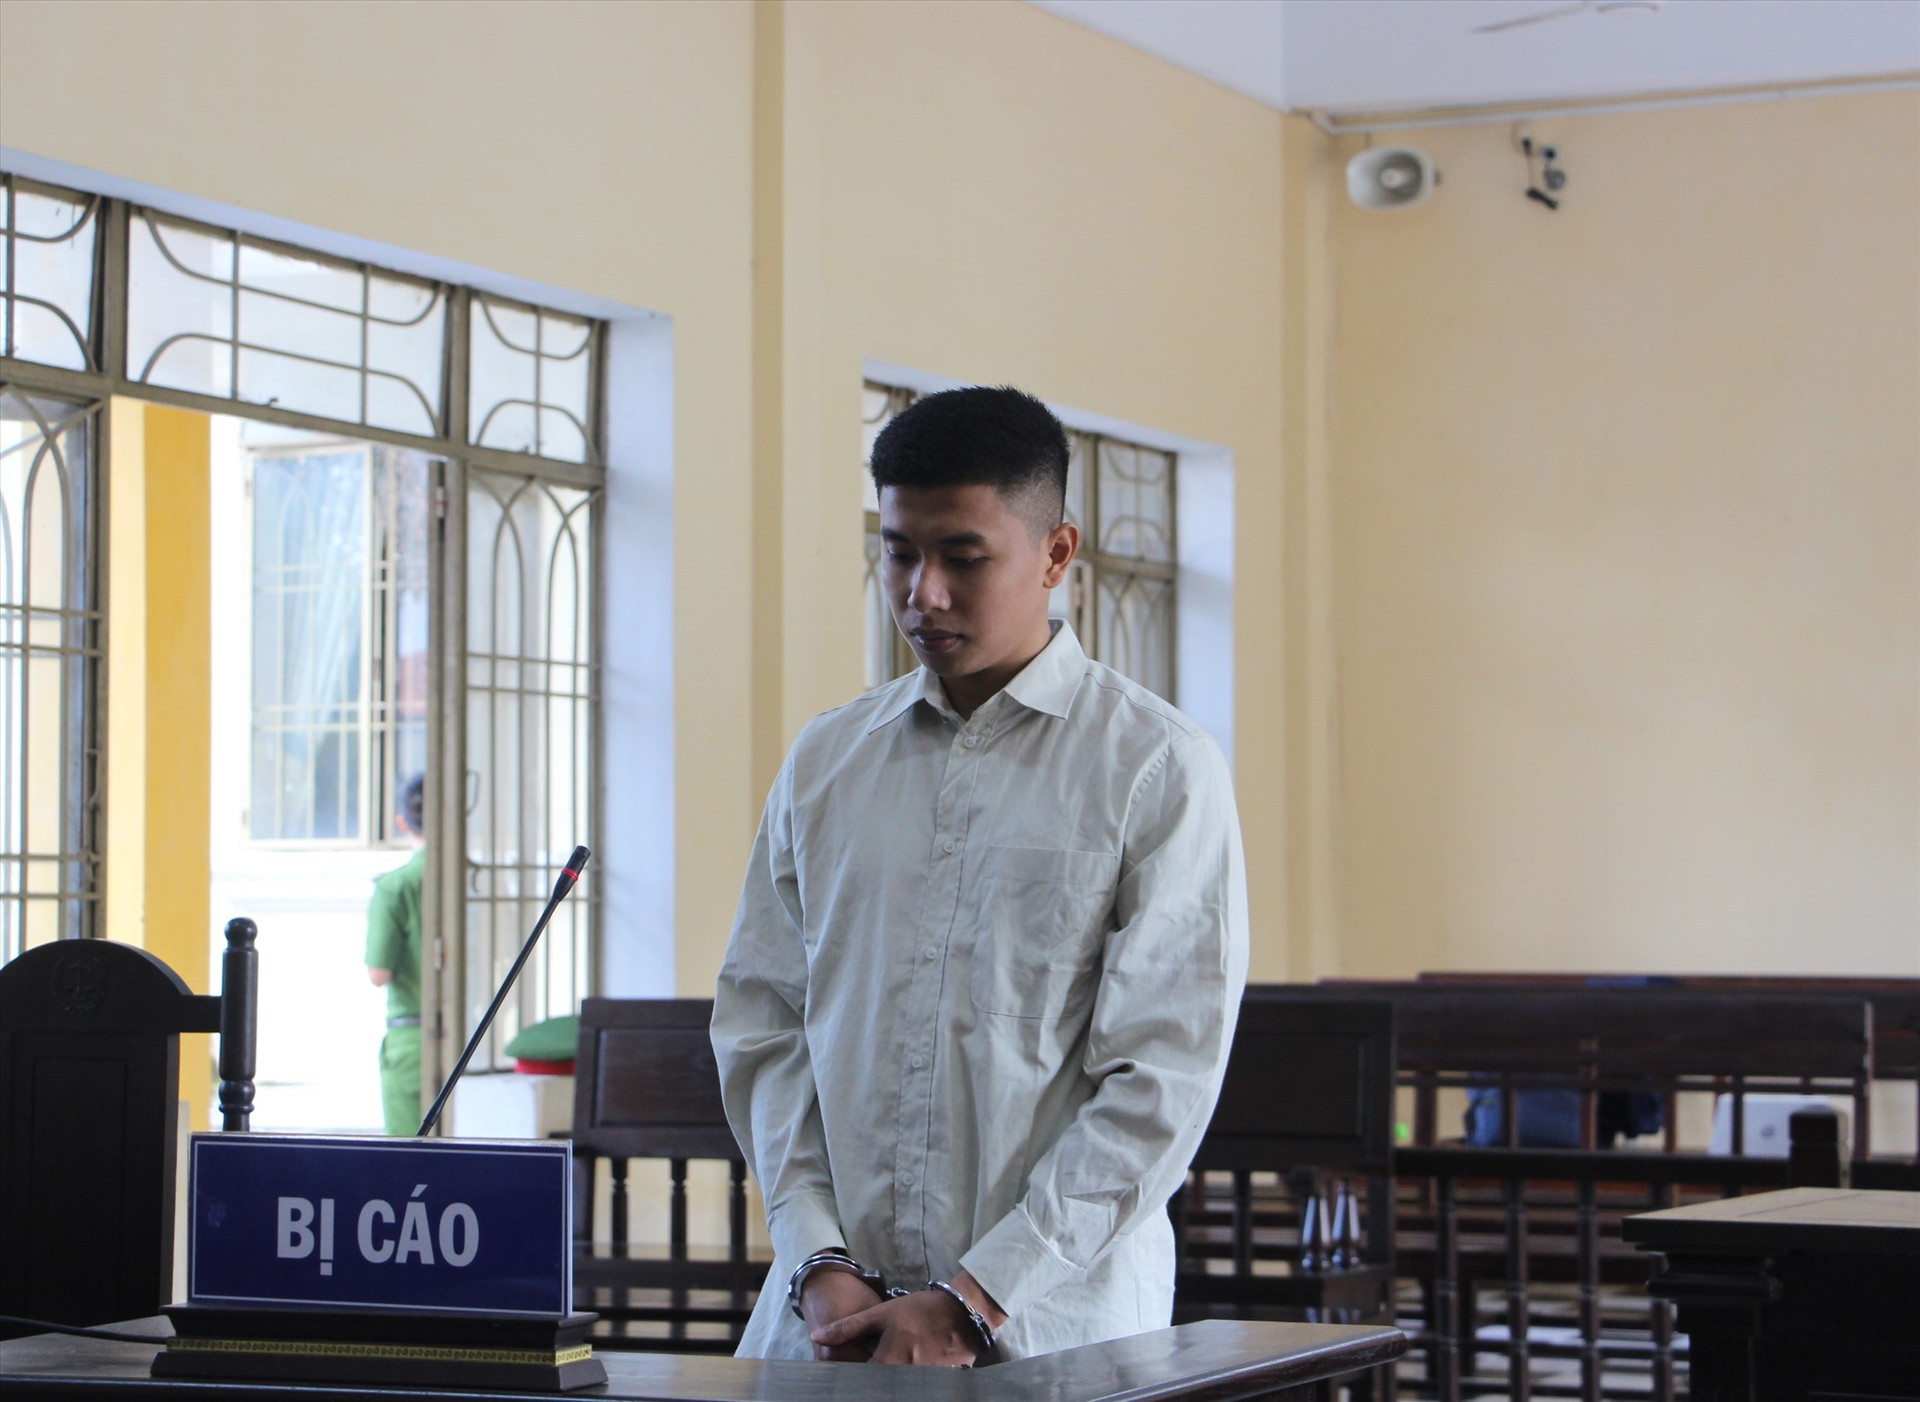 Bị cáo Nguyễn Kim Đô tại phiên tòa. Ảnh: P.L.